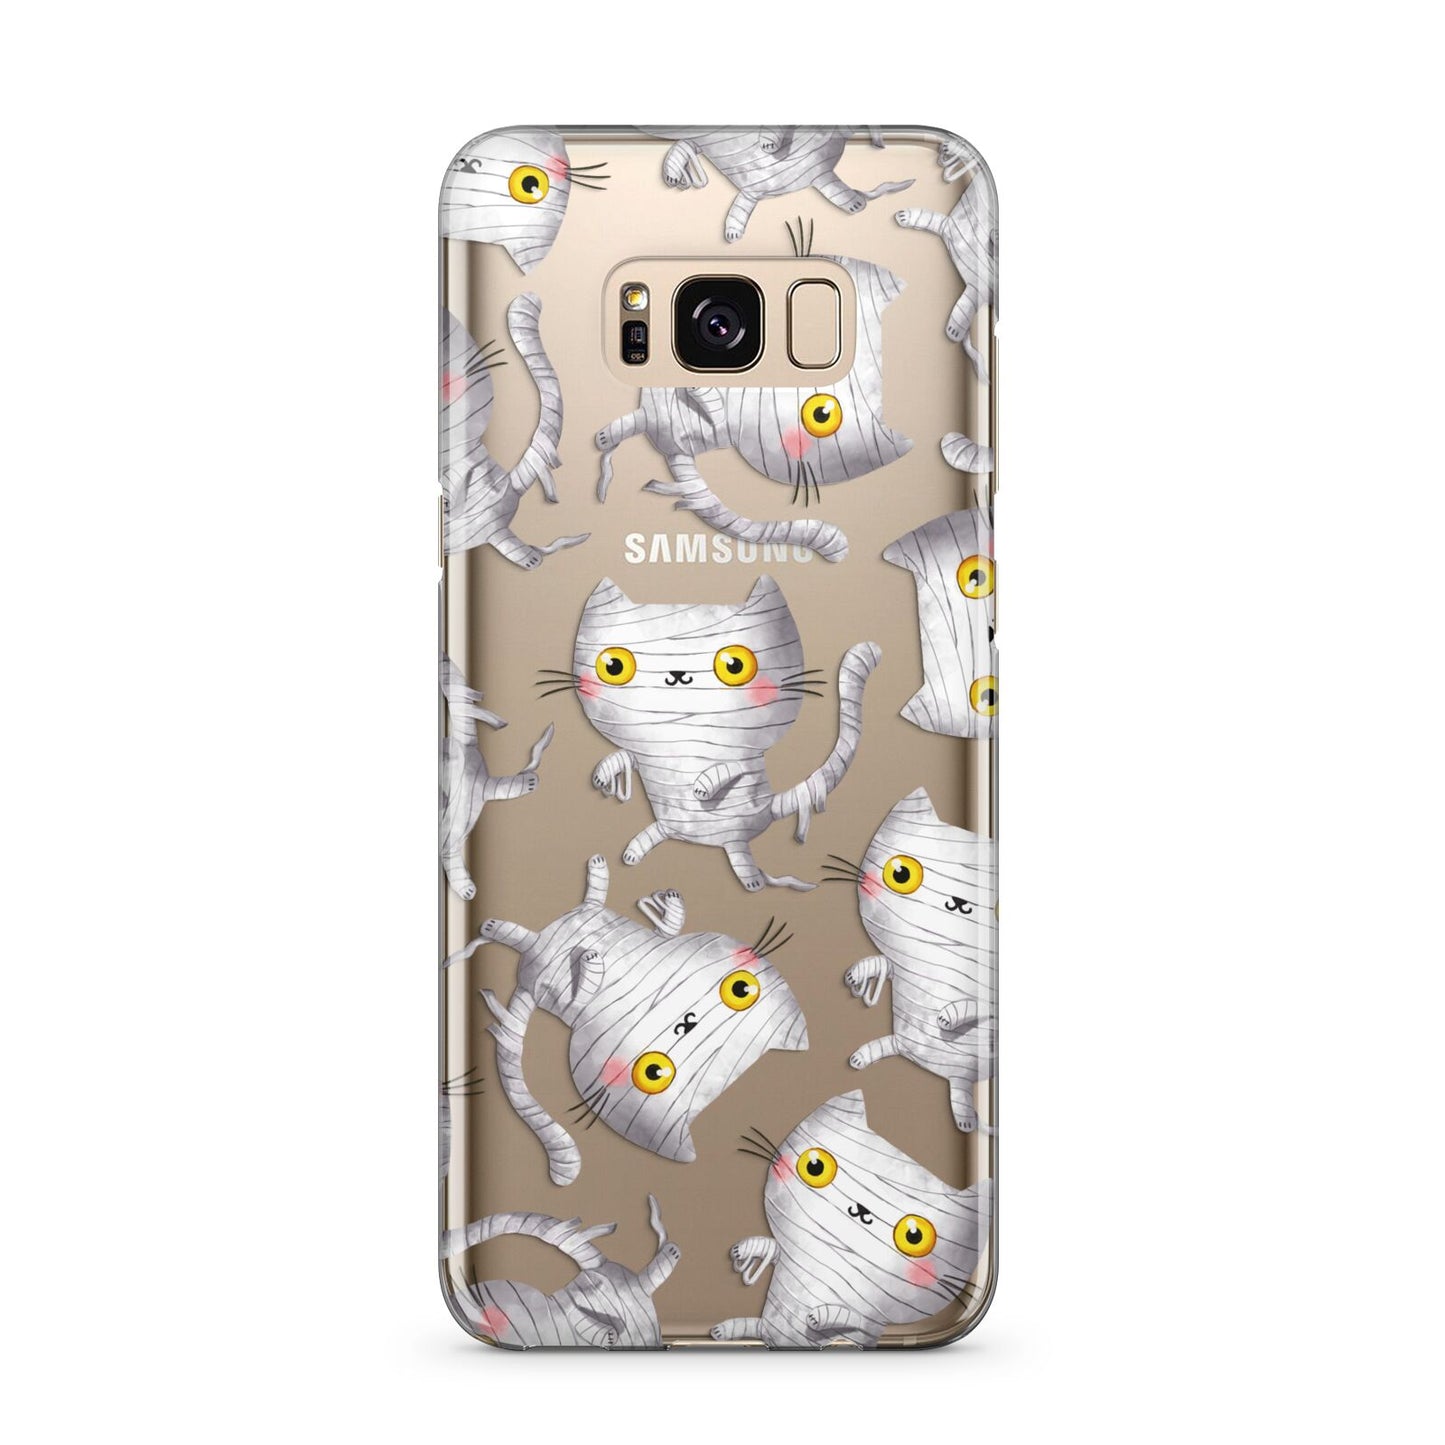 Mummy Cats Samsung Galaxy S8 Plus Case